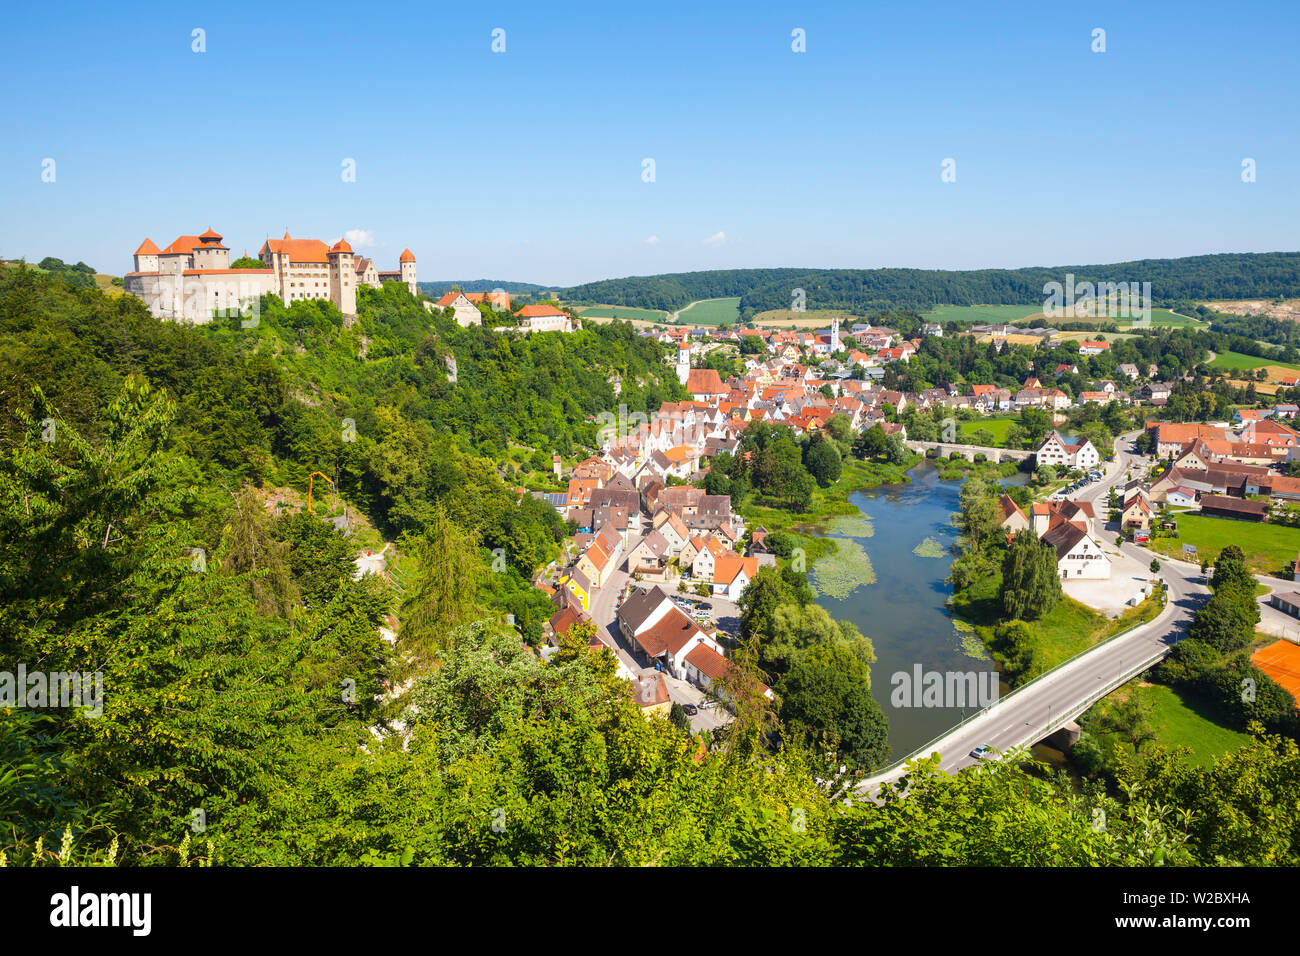 Erhöhten Blick auf malerische Harburger Schloss und Altstadt, Harburg, Bayern, Deutschland Stockfoto